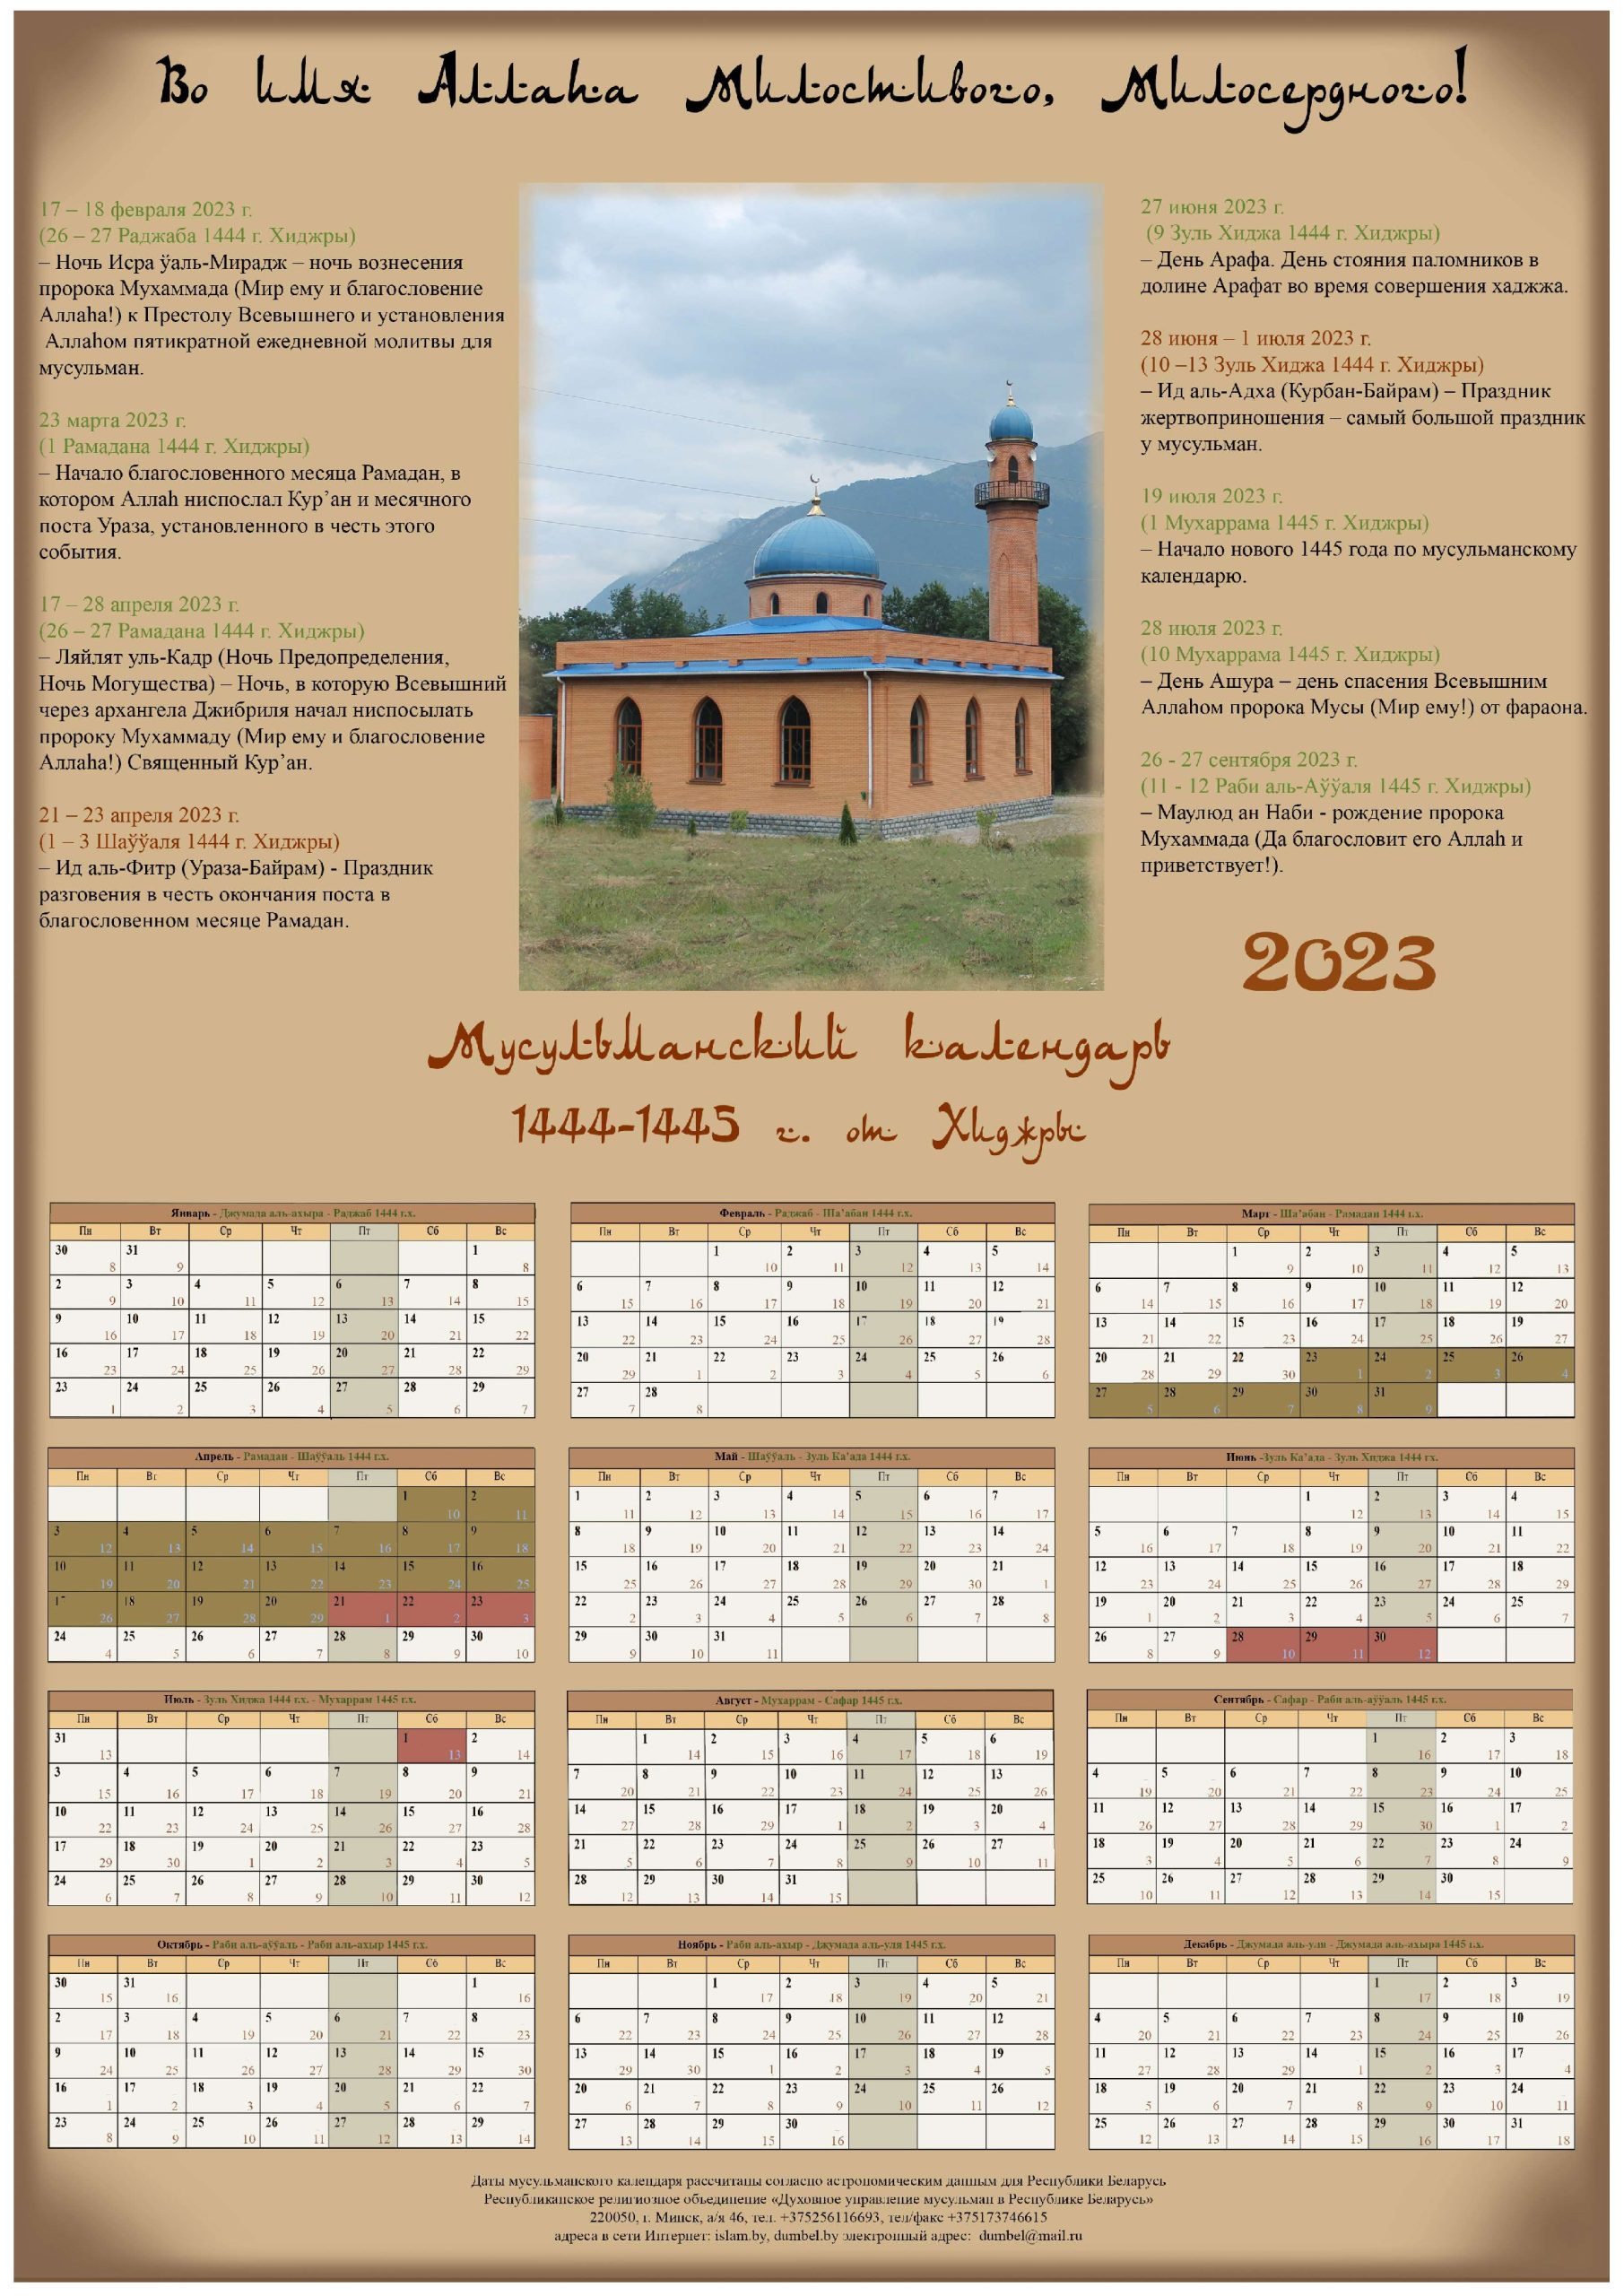 Мусульманский год 2023. Мусульманский календарь на 2023 год с праздниками. Исламский календарь (Хиджра) на 2023. Исламский календарь на 2023 год. Мусульманский календарь 2023.